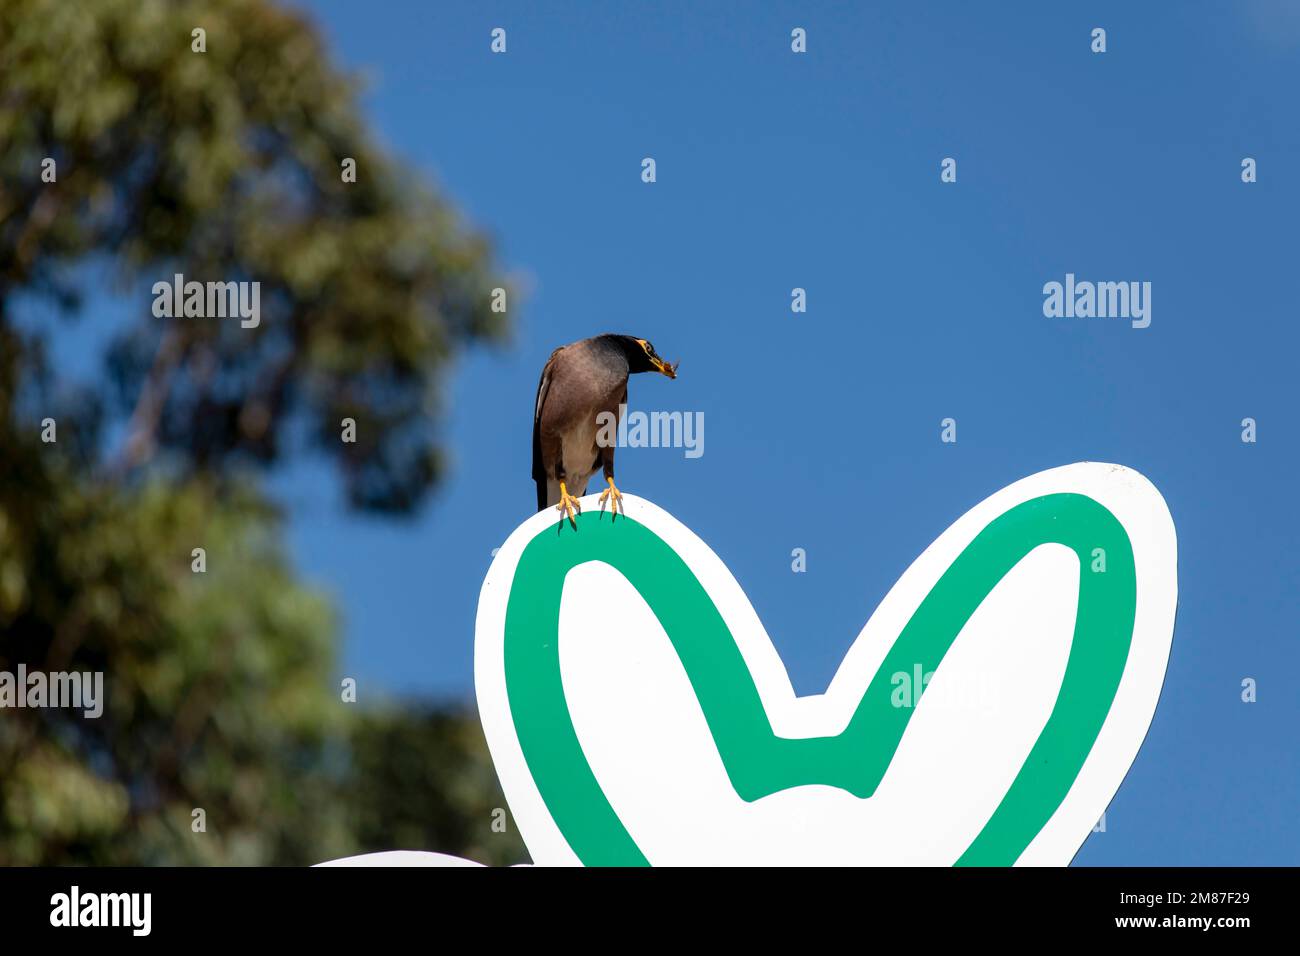 Australian Common Myna (Acridotheres tristis) perçant sur un panneau à Sydney, Nouvelle-Galles du Sud, Australie (photo de Tara Chand Malhotra) Banque D'Images